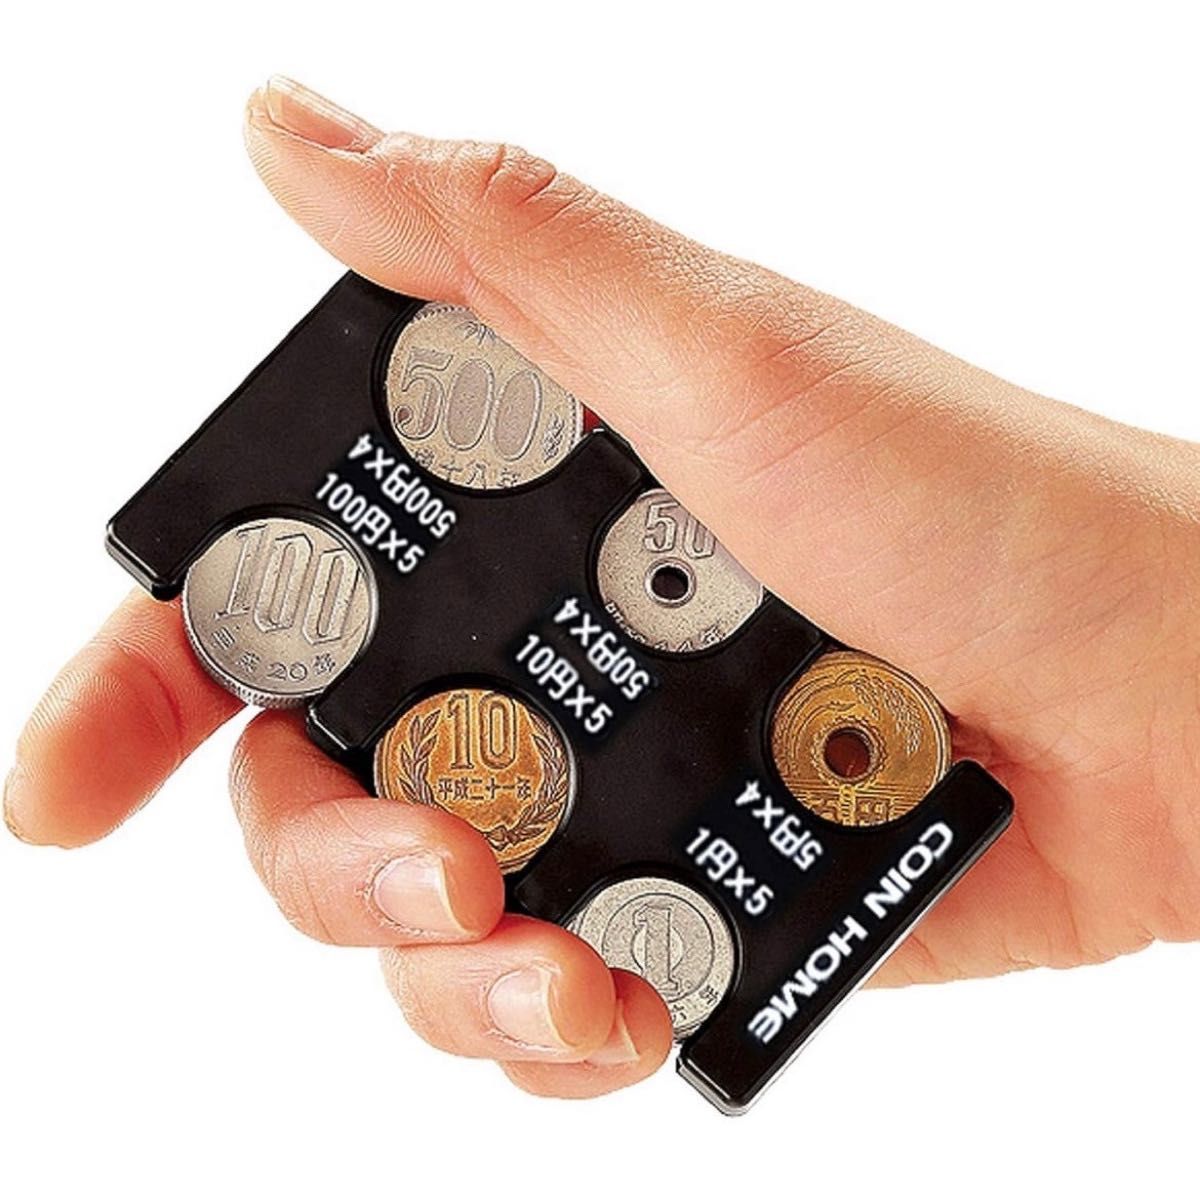 コインホルダー 携帯コインホルダー 小銭 メンズ レディース ブラック 片手で取り出せる コイン収納 小銭財布